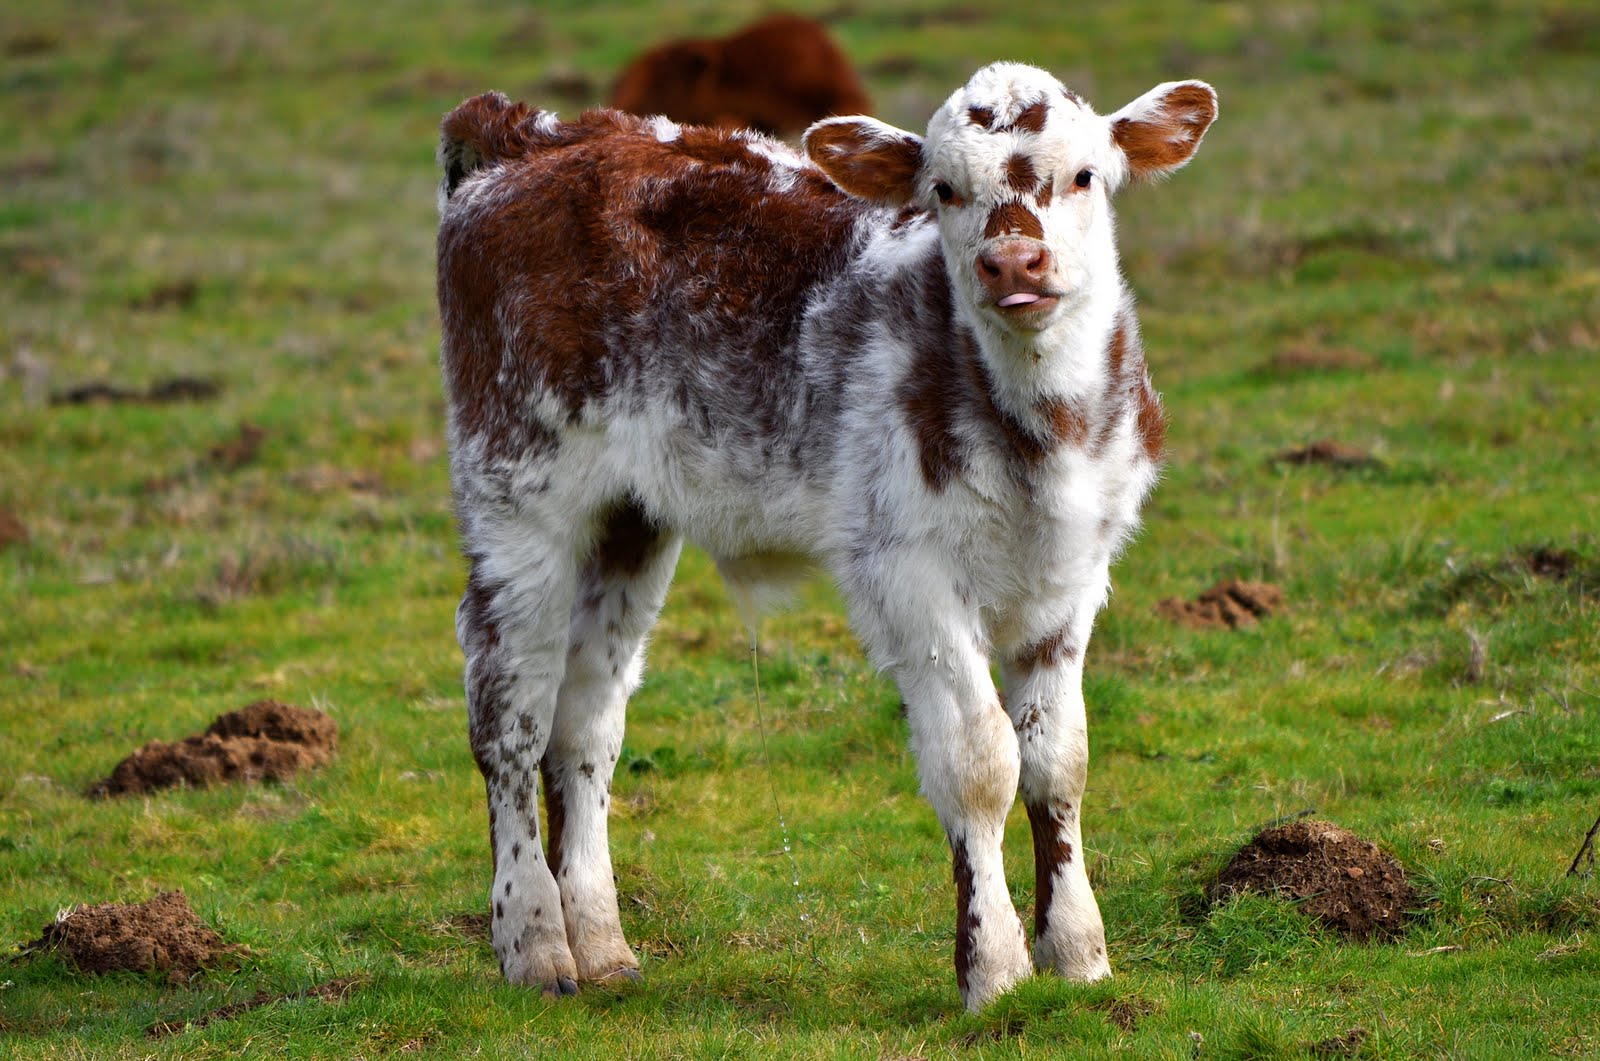 LuAnn Kessi: Cows & Calves...